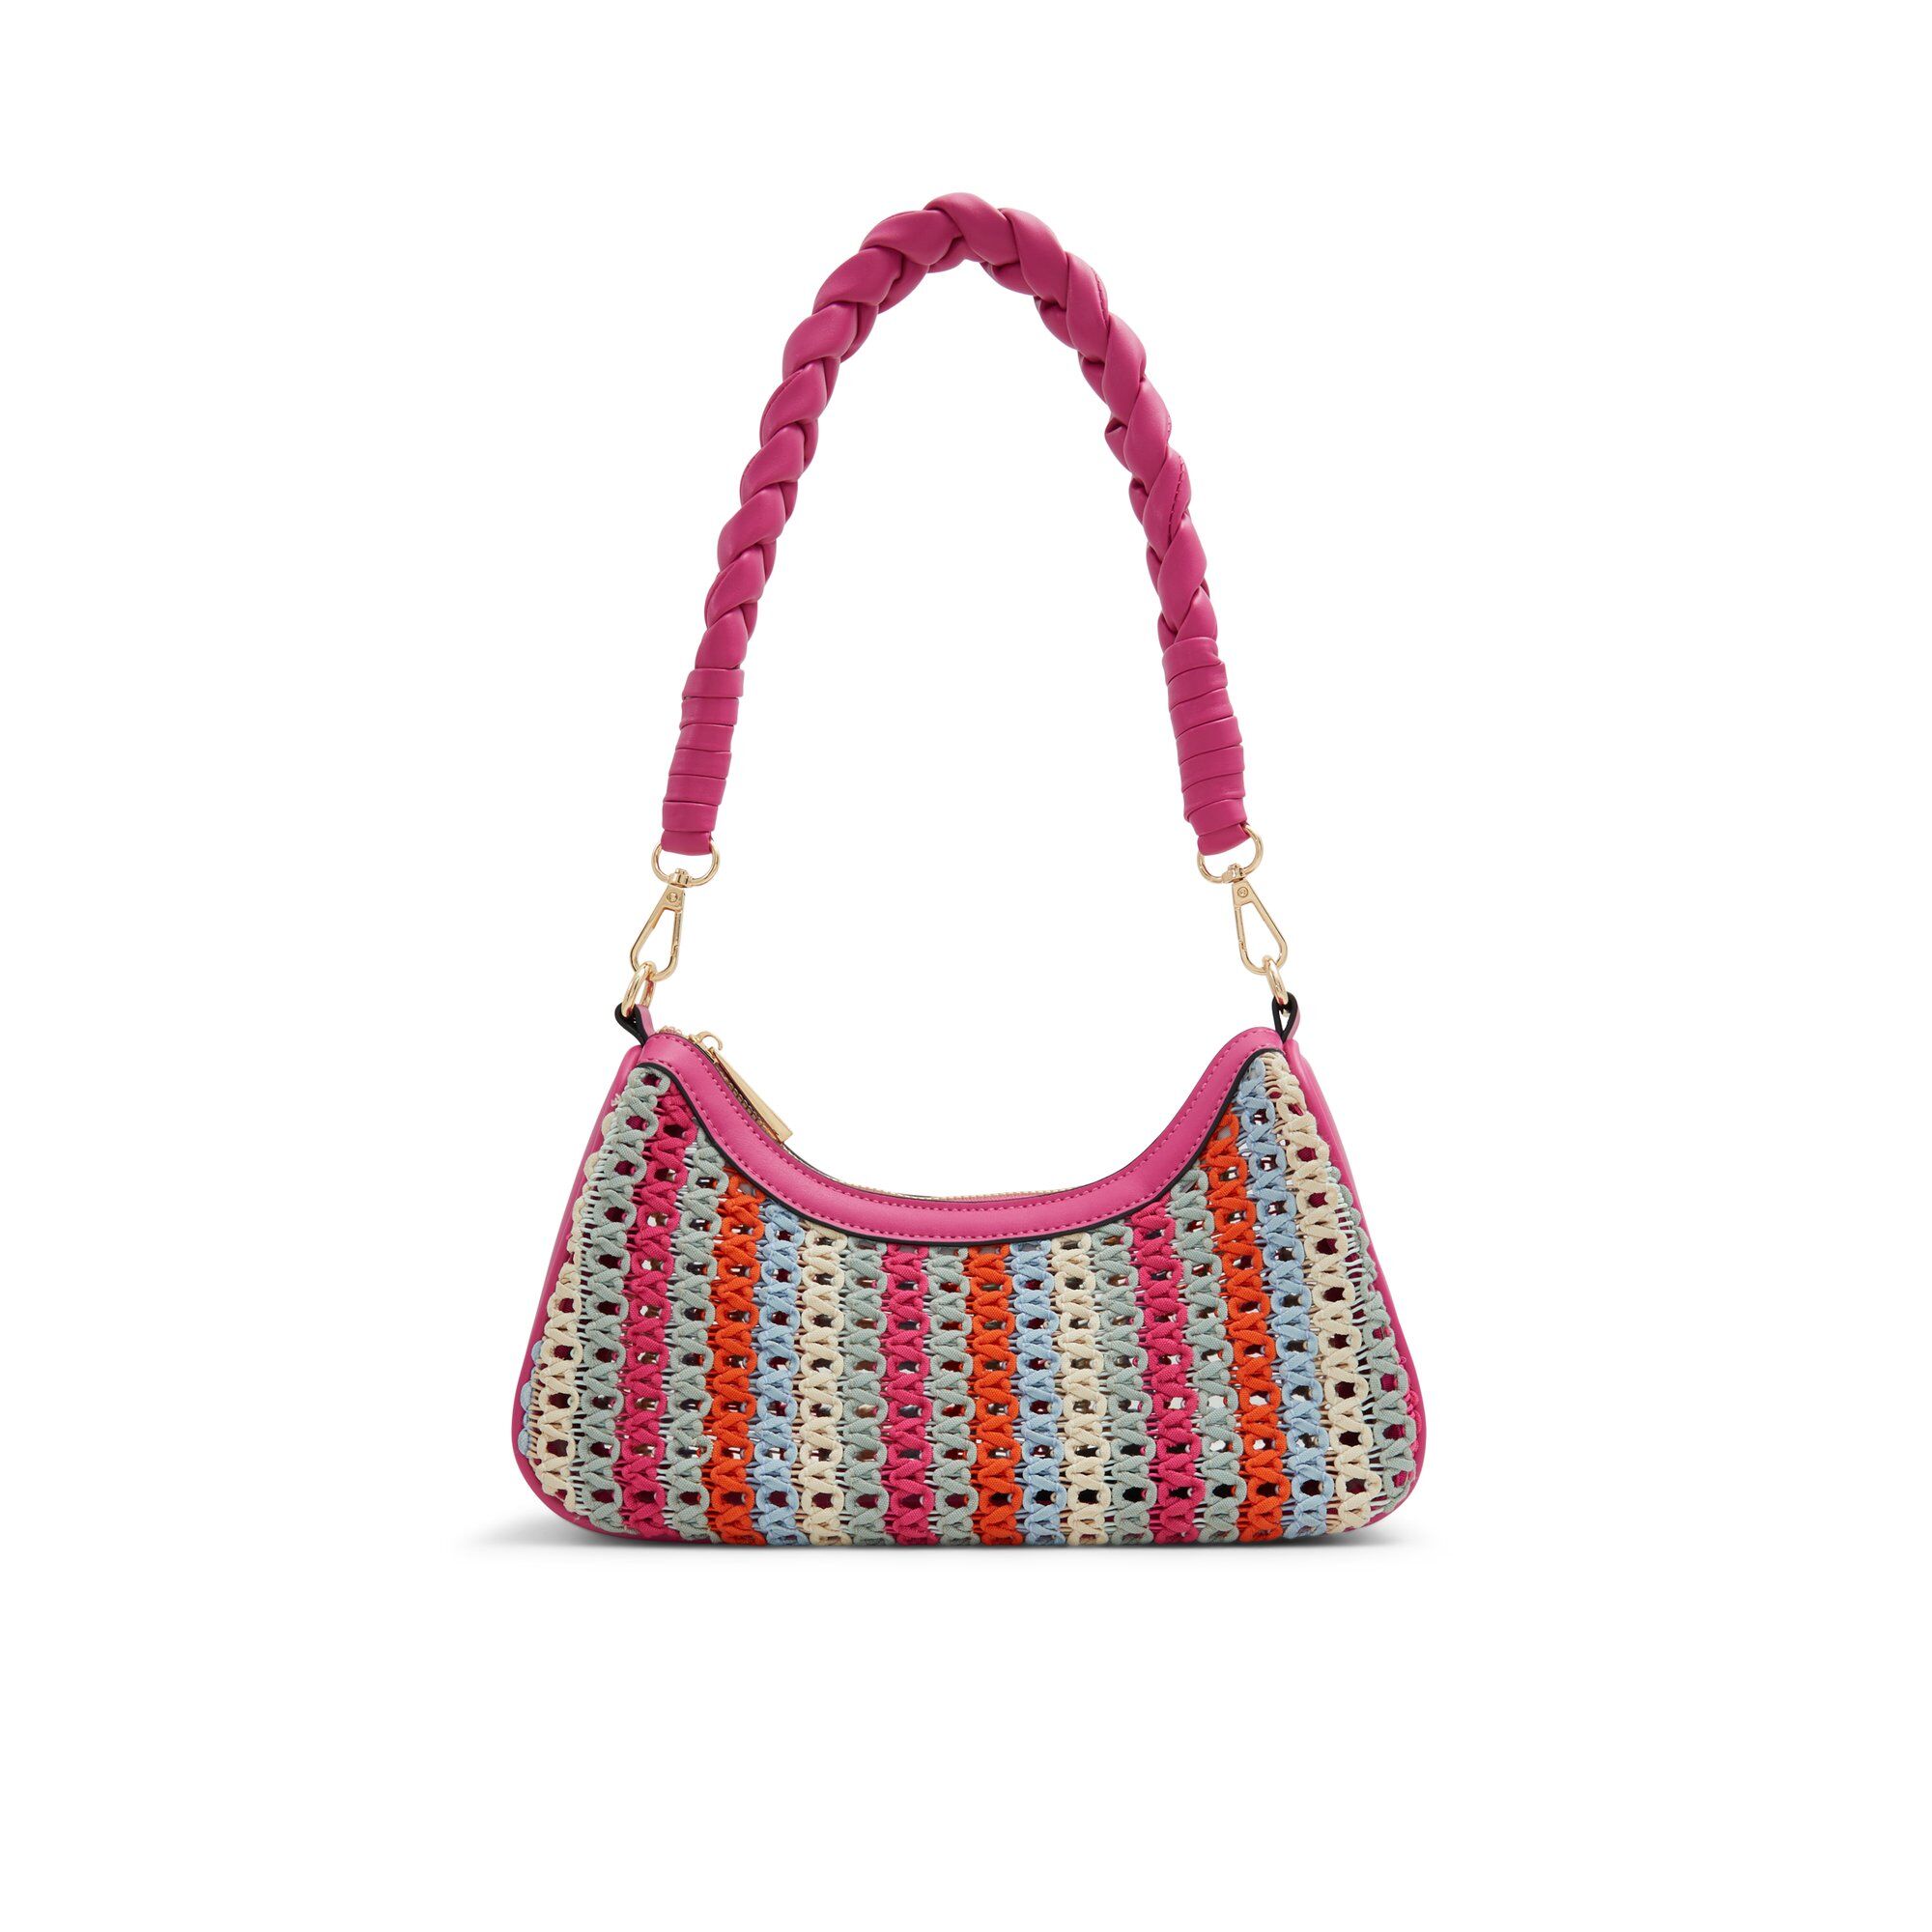 ALDO Emrysx - Women's Shoulder Bag Handbag - Bright